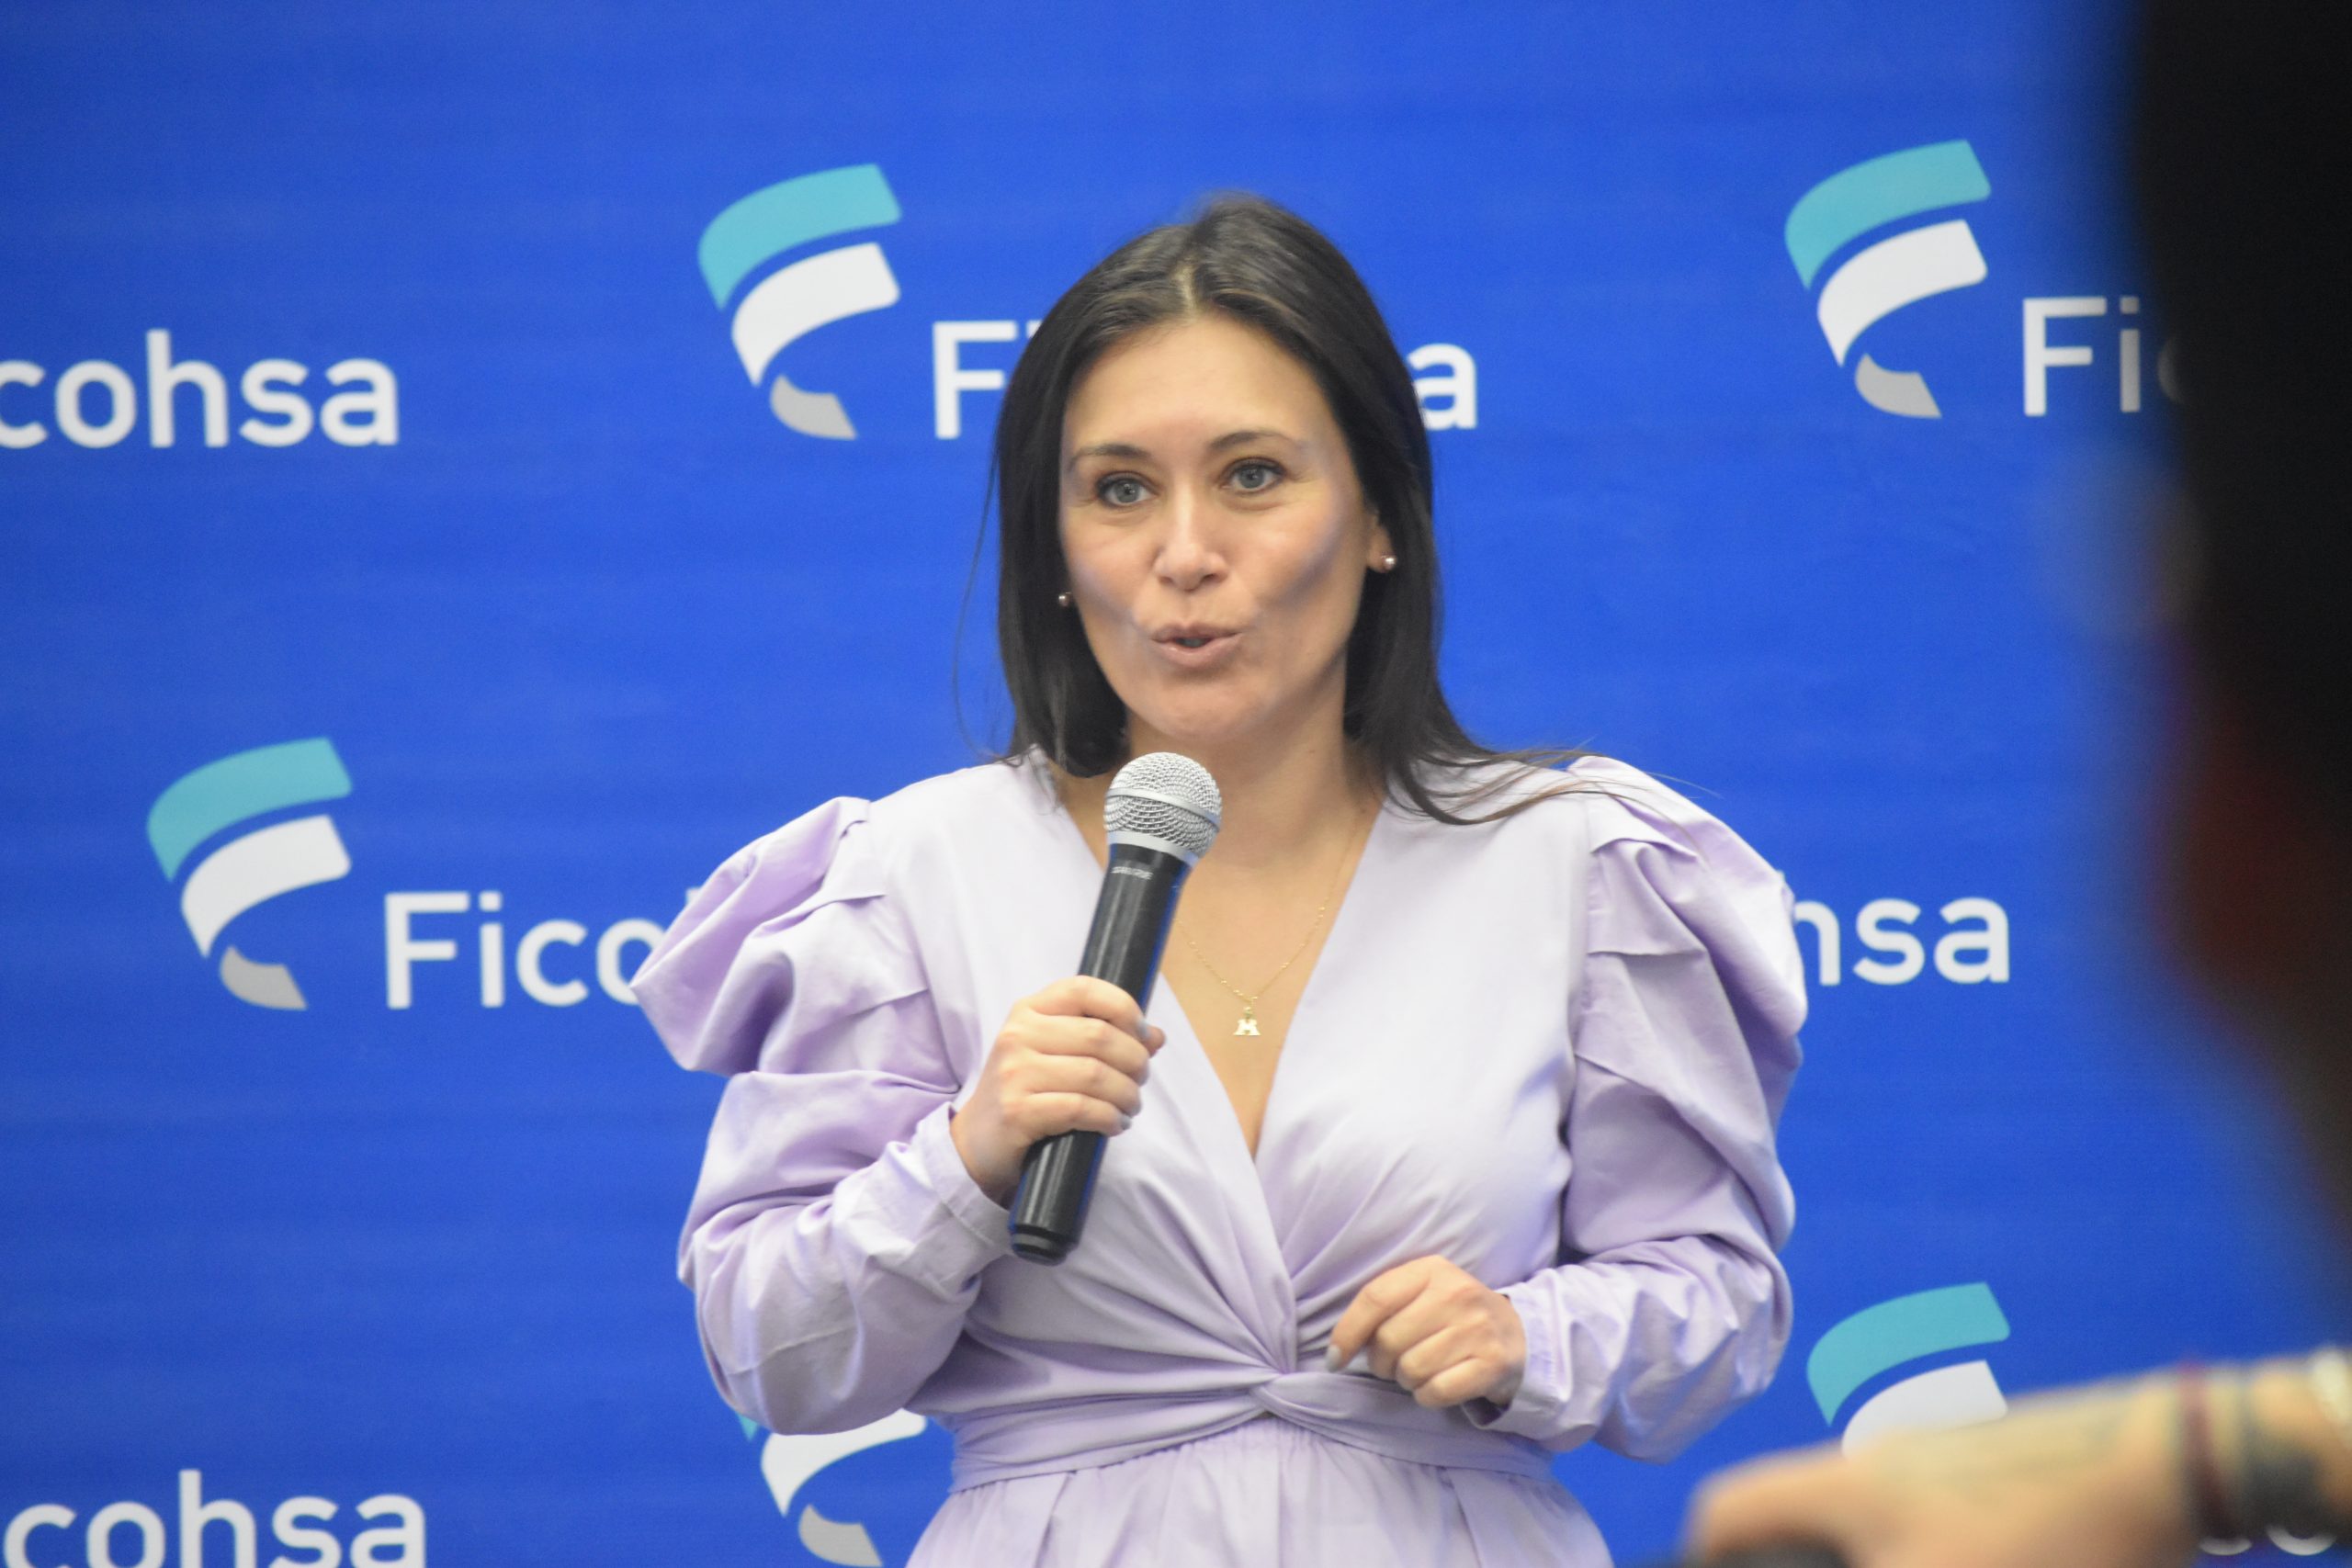 Banco Ficohsa lanza nueva era digital de productos financieros  